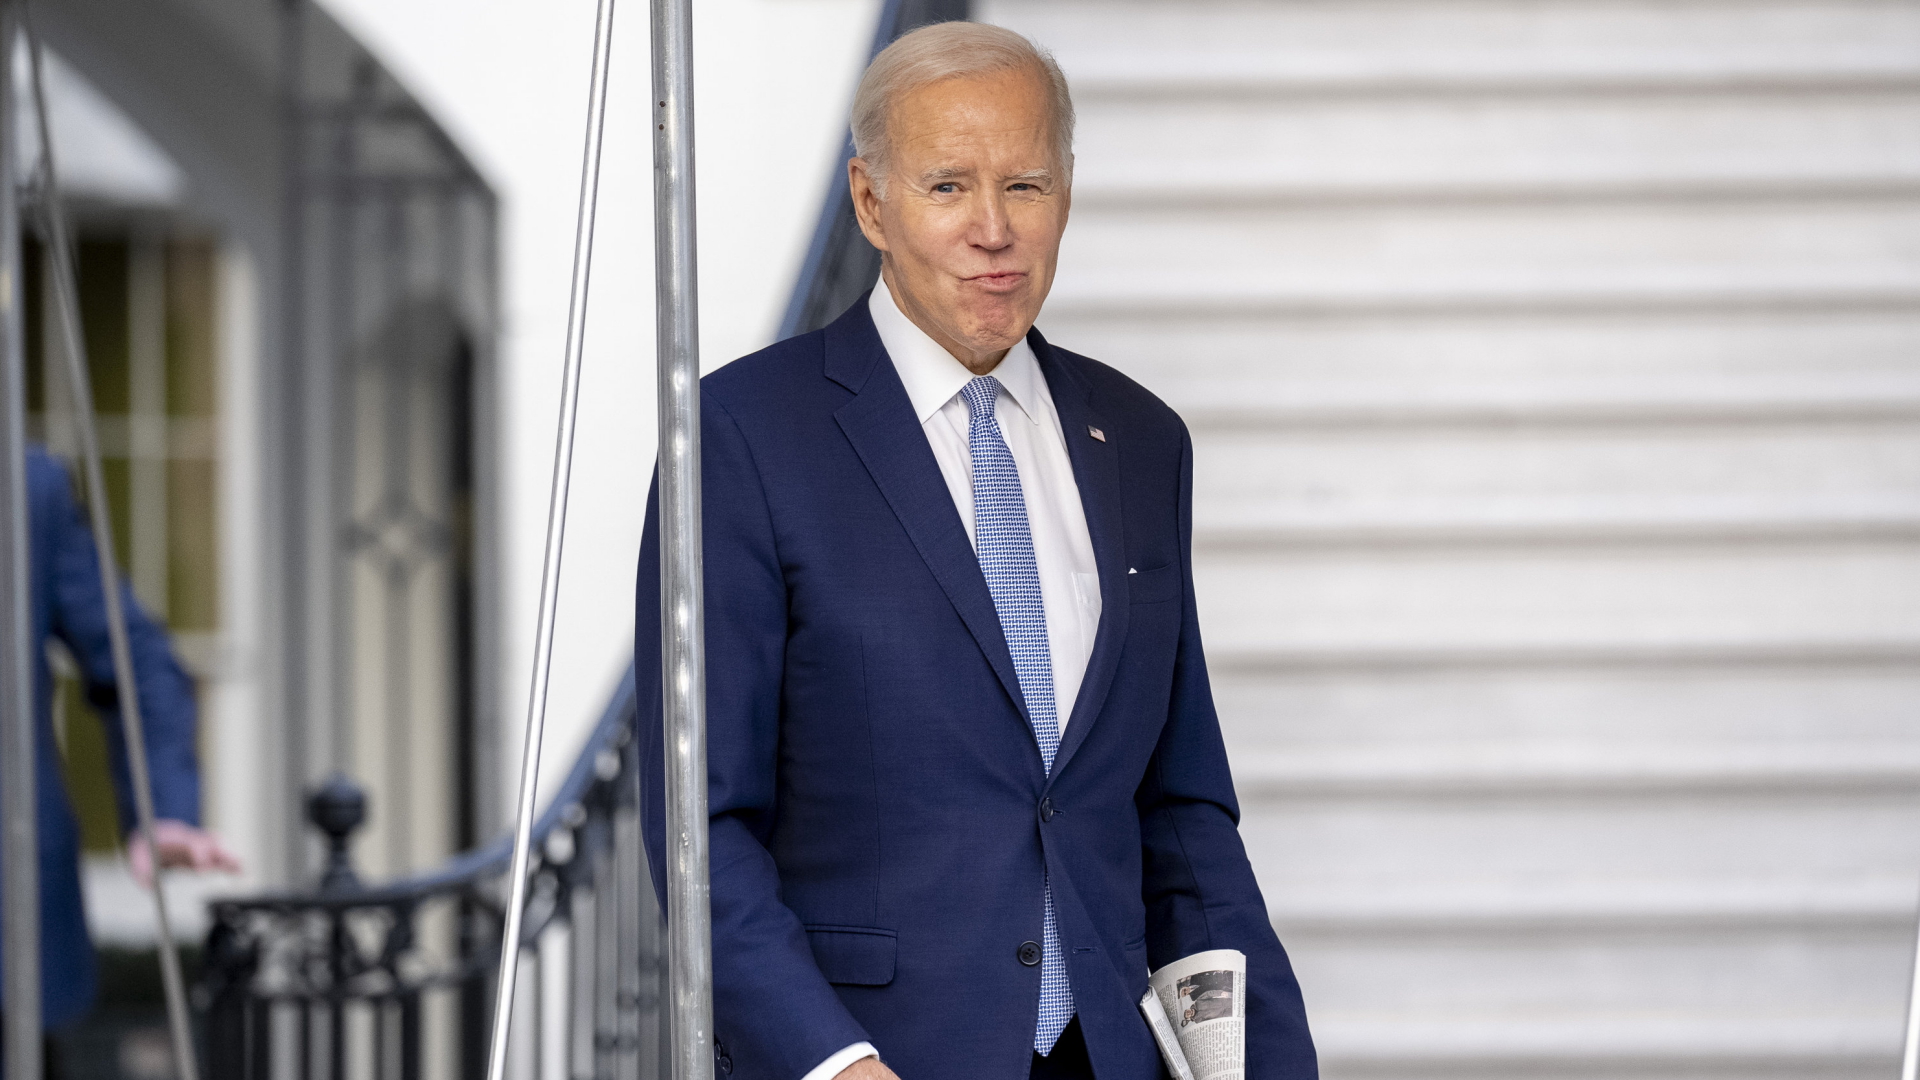 Joe Biden in Washington